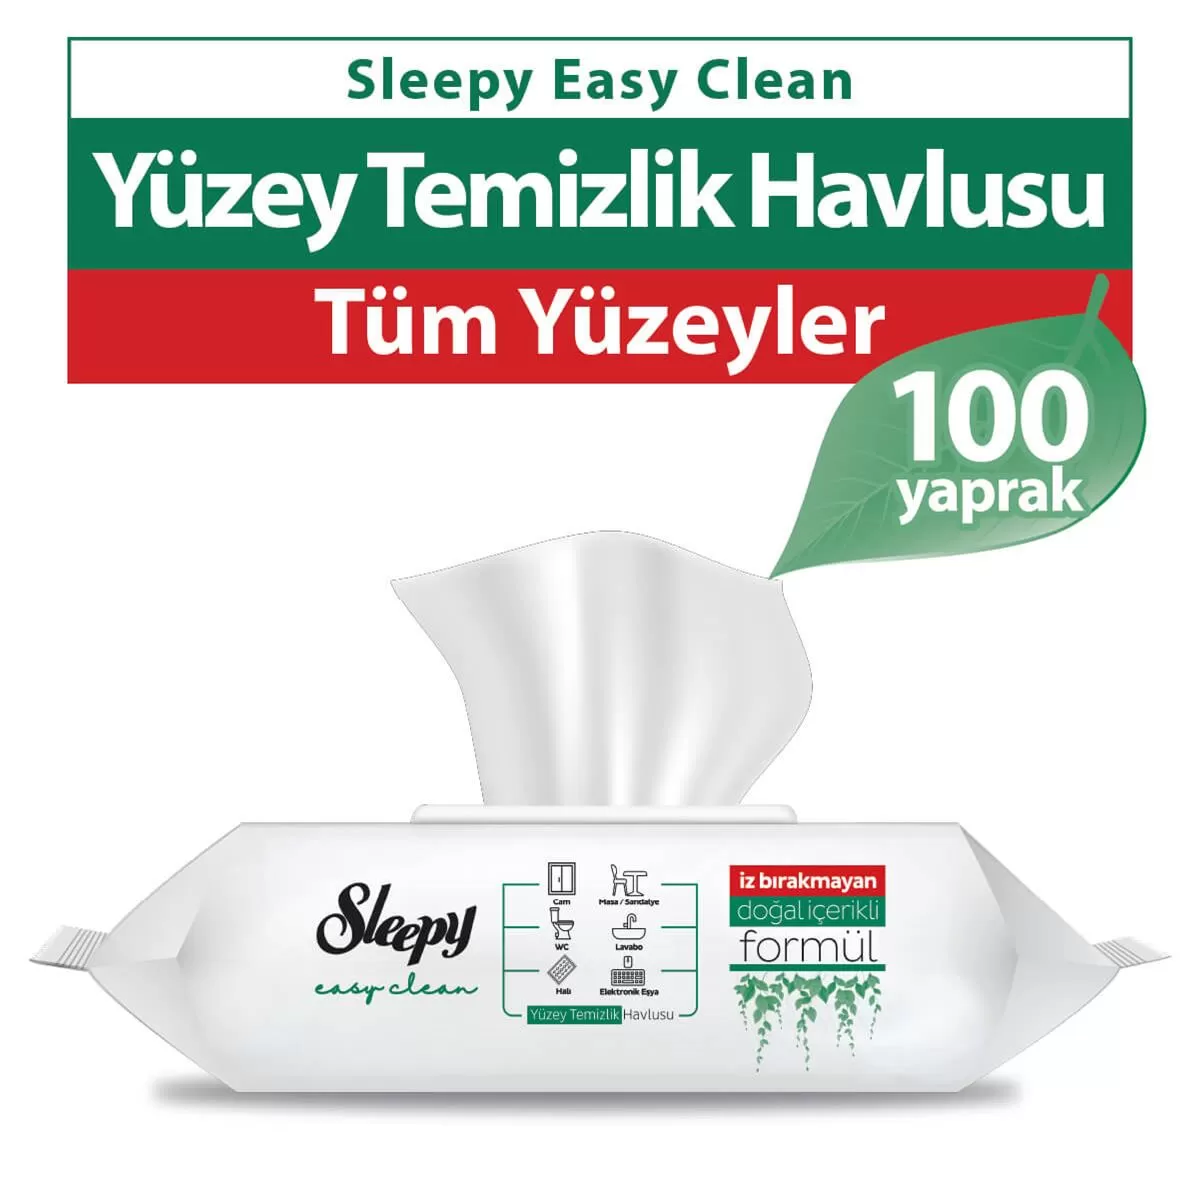 Sleepy Easy Clean Yüzey Temizlik Havlusu 100 Yaprak 4 Paket